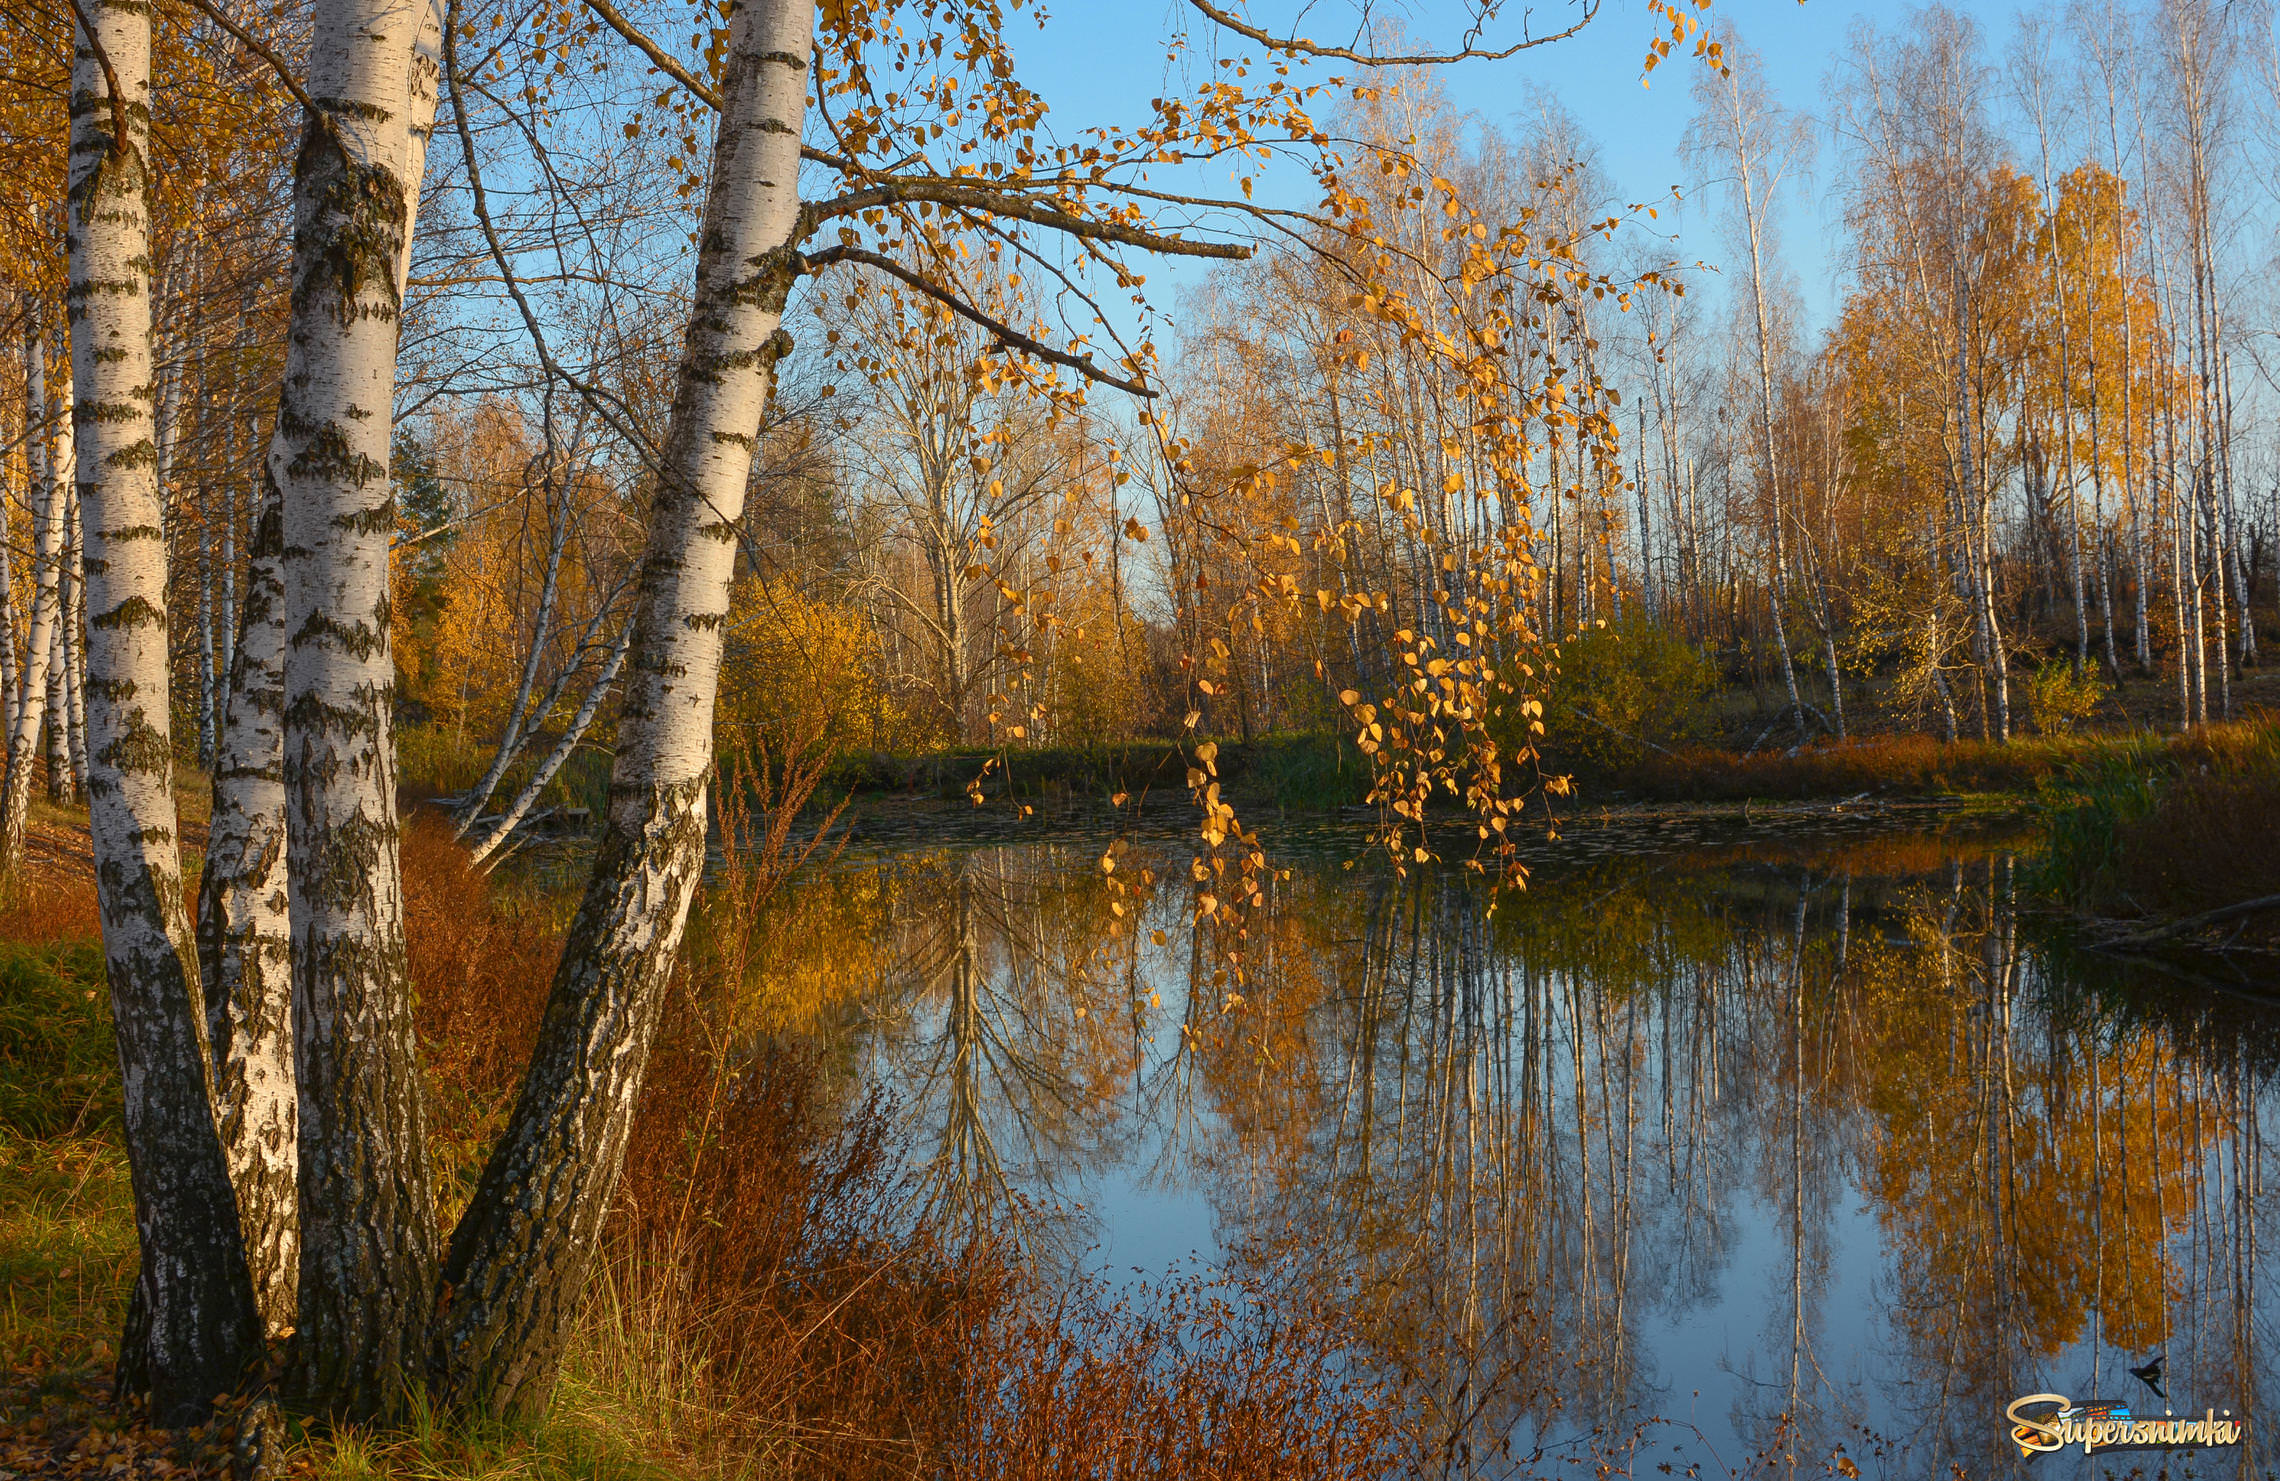 Старый пруд в осенней позолоте...синеве и солнце октября...